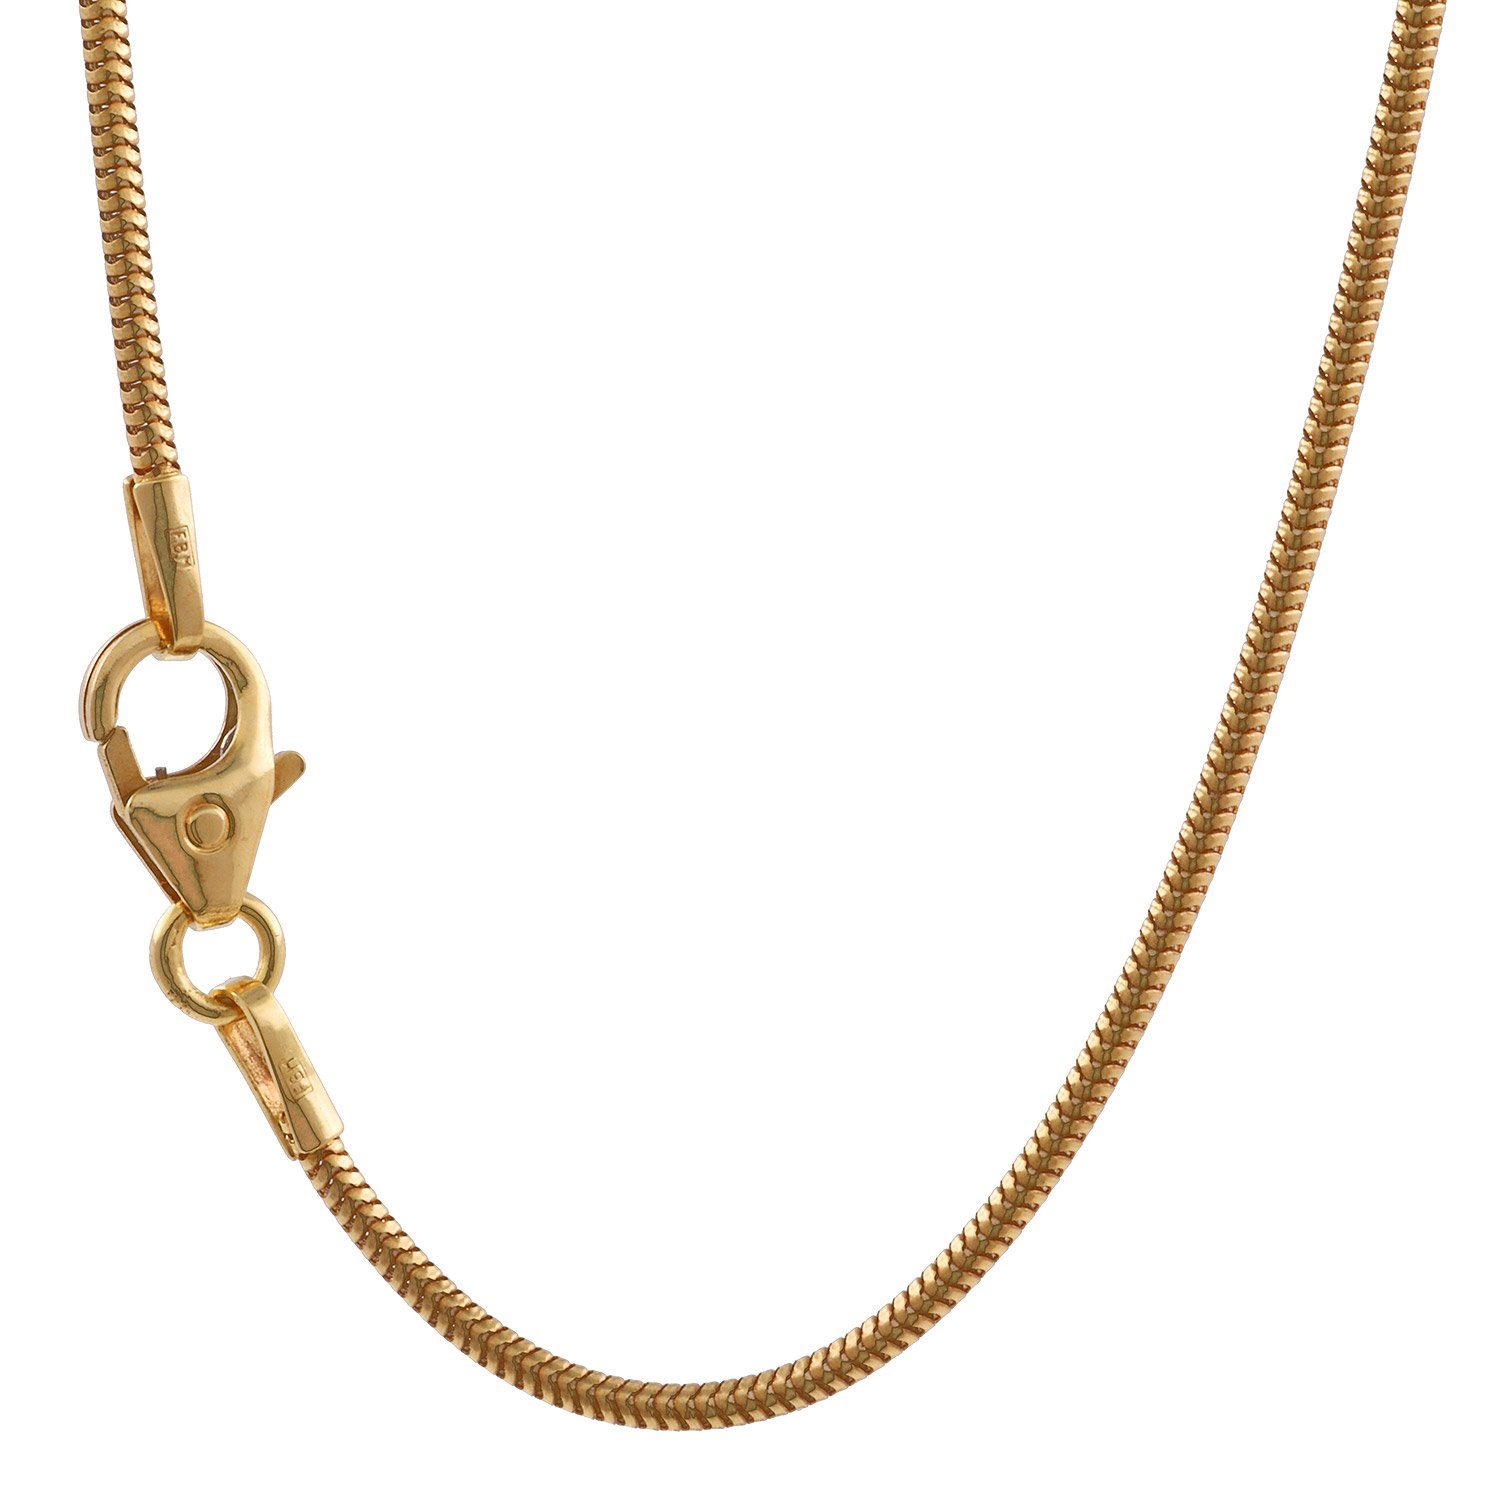 HOPLO Schlangenkette Goldkette Schlangenkette Länge 45cm - Breite 1,2mm - 585-14 Karat Gold, Made in Germany